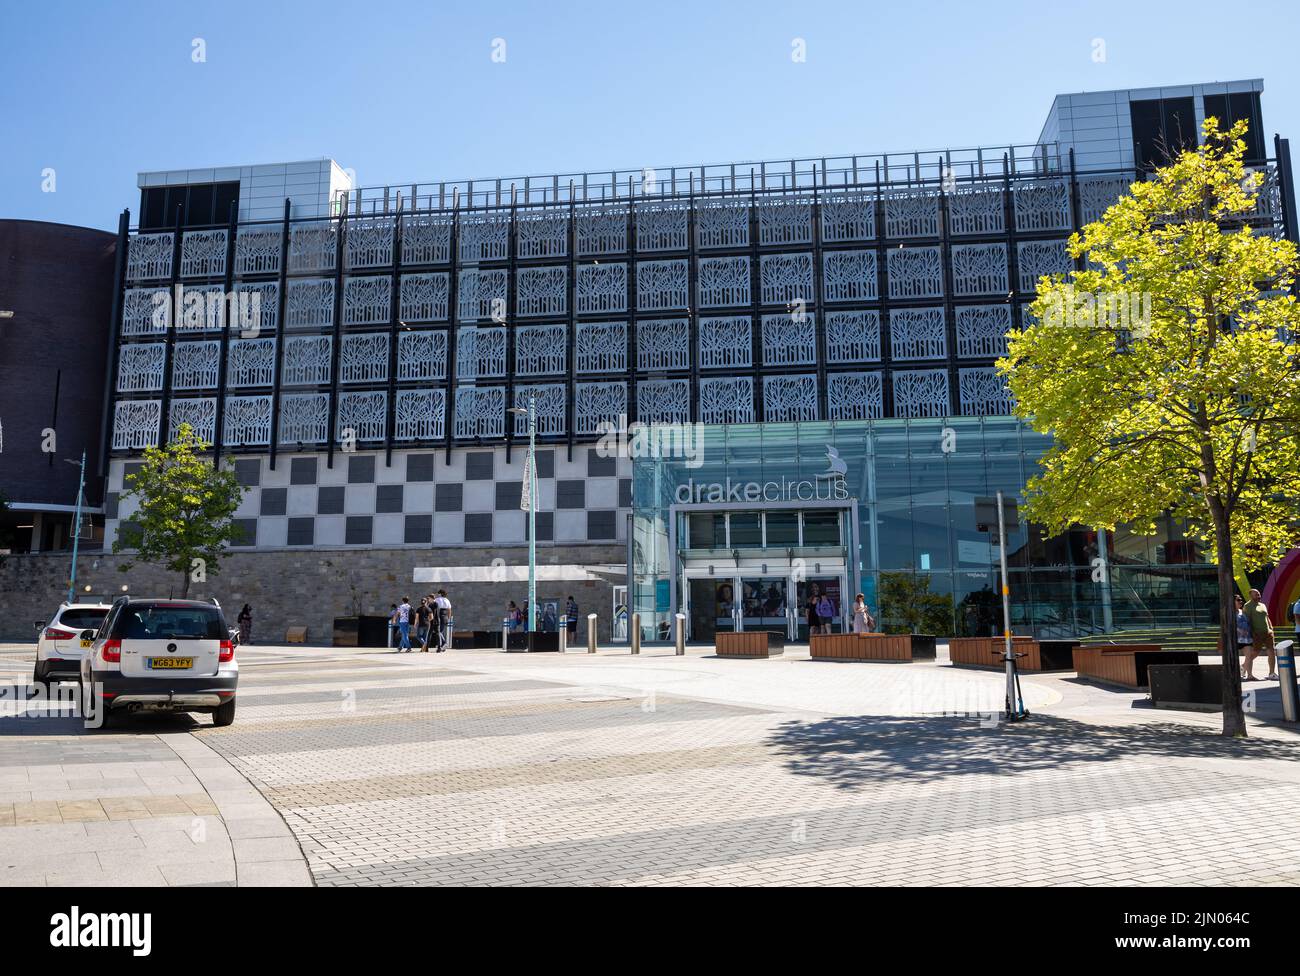 Einkaufszentrum Drake Circus in Plymouth an einem heißen, sonnigen Tag Stockfoto